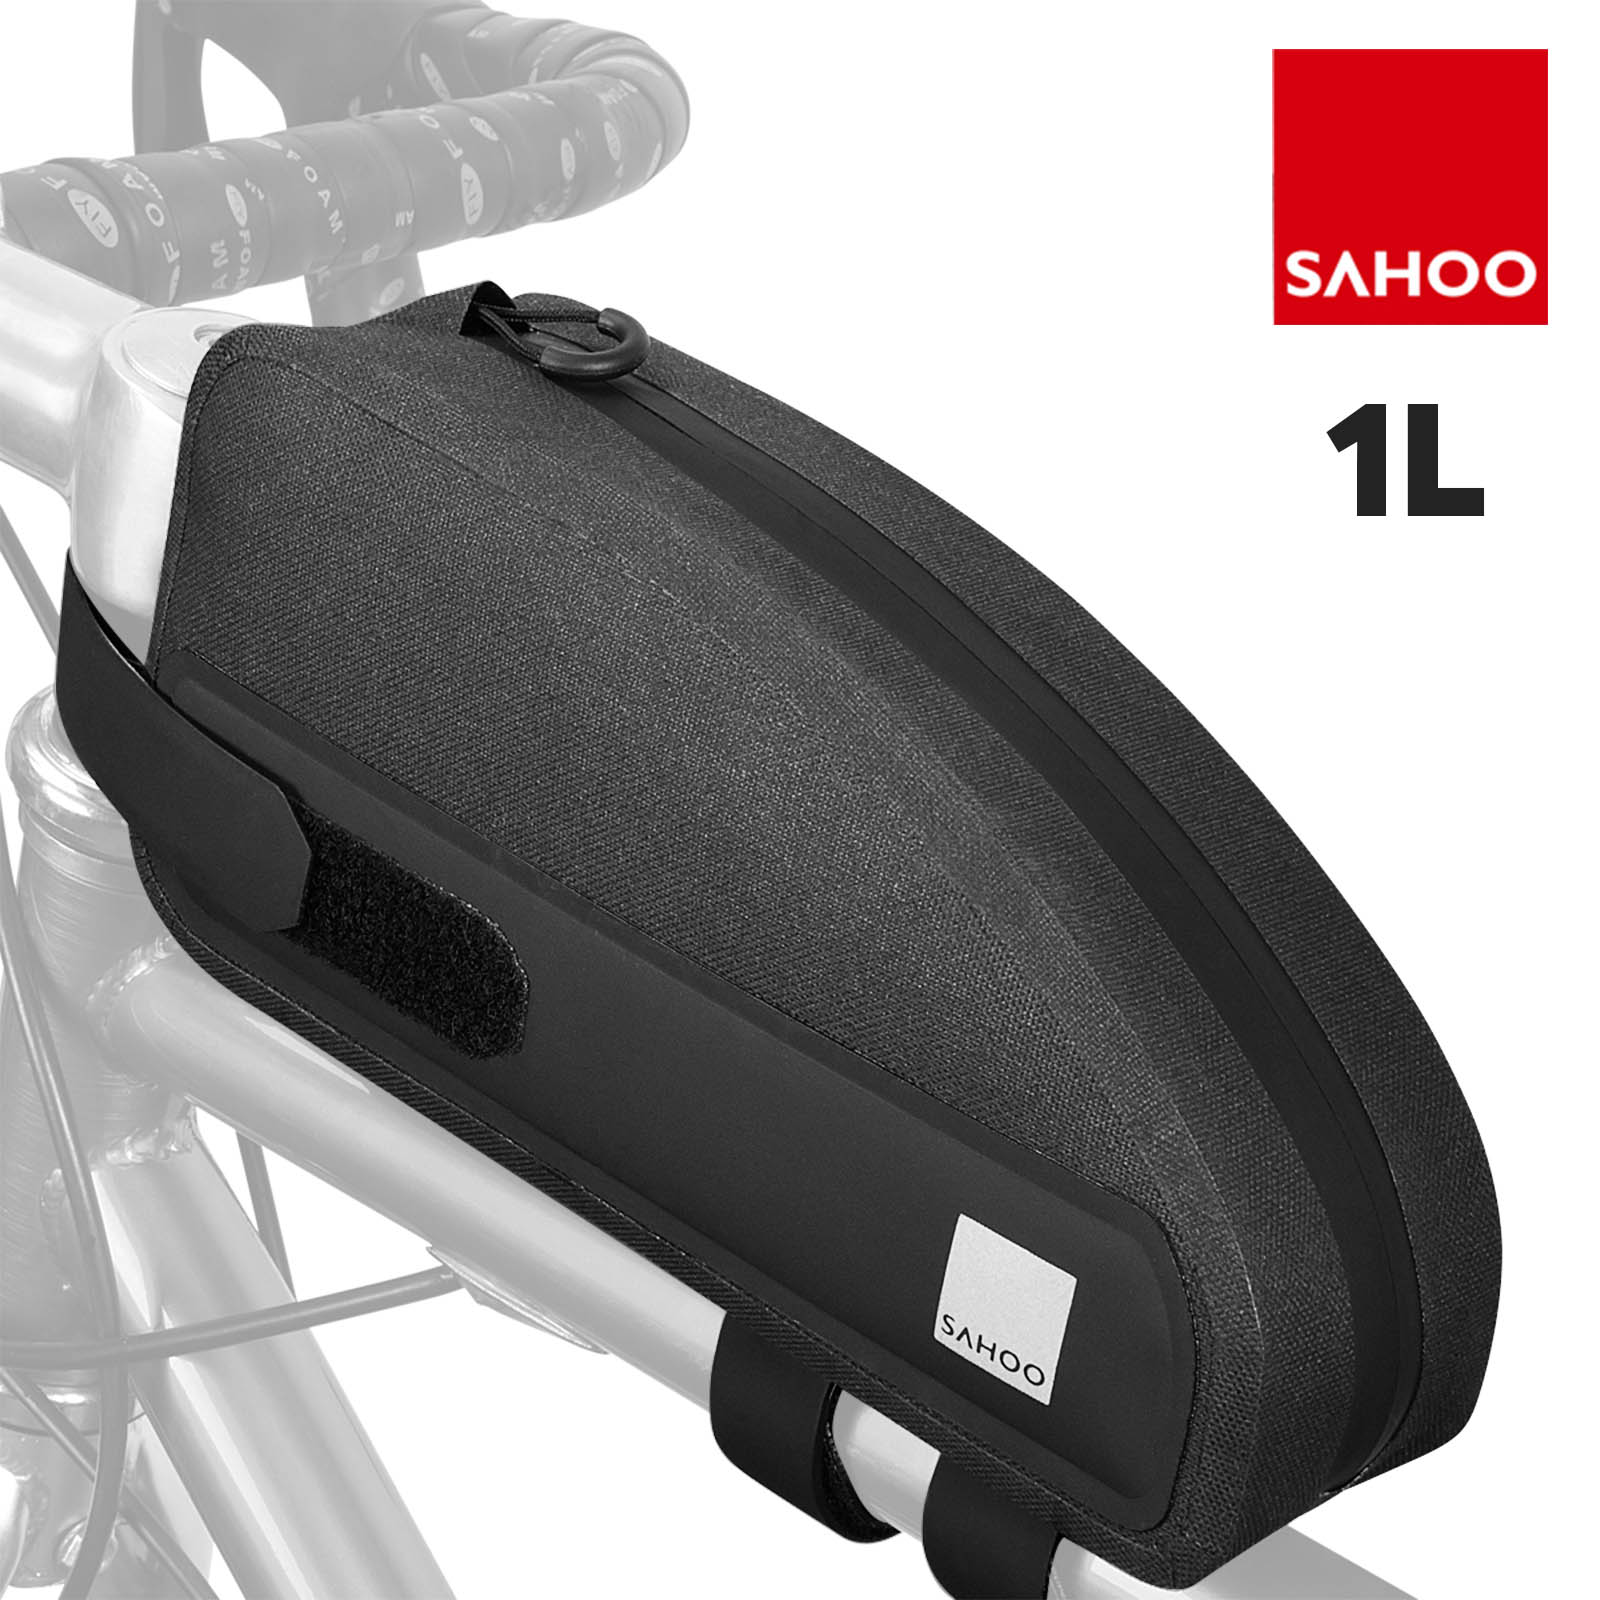 Bolsa impermeable para bicicleta 1L de capacidad, diseño compacto - Sahoo  Negro - Spain